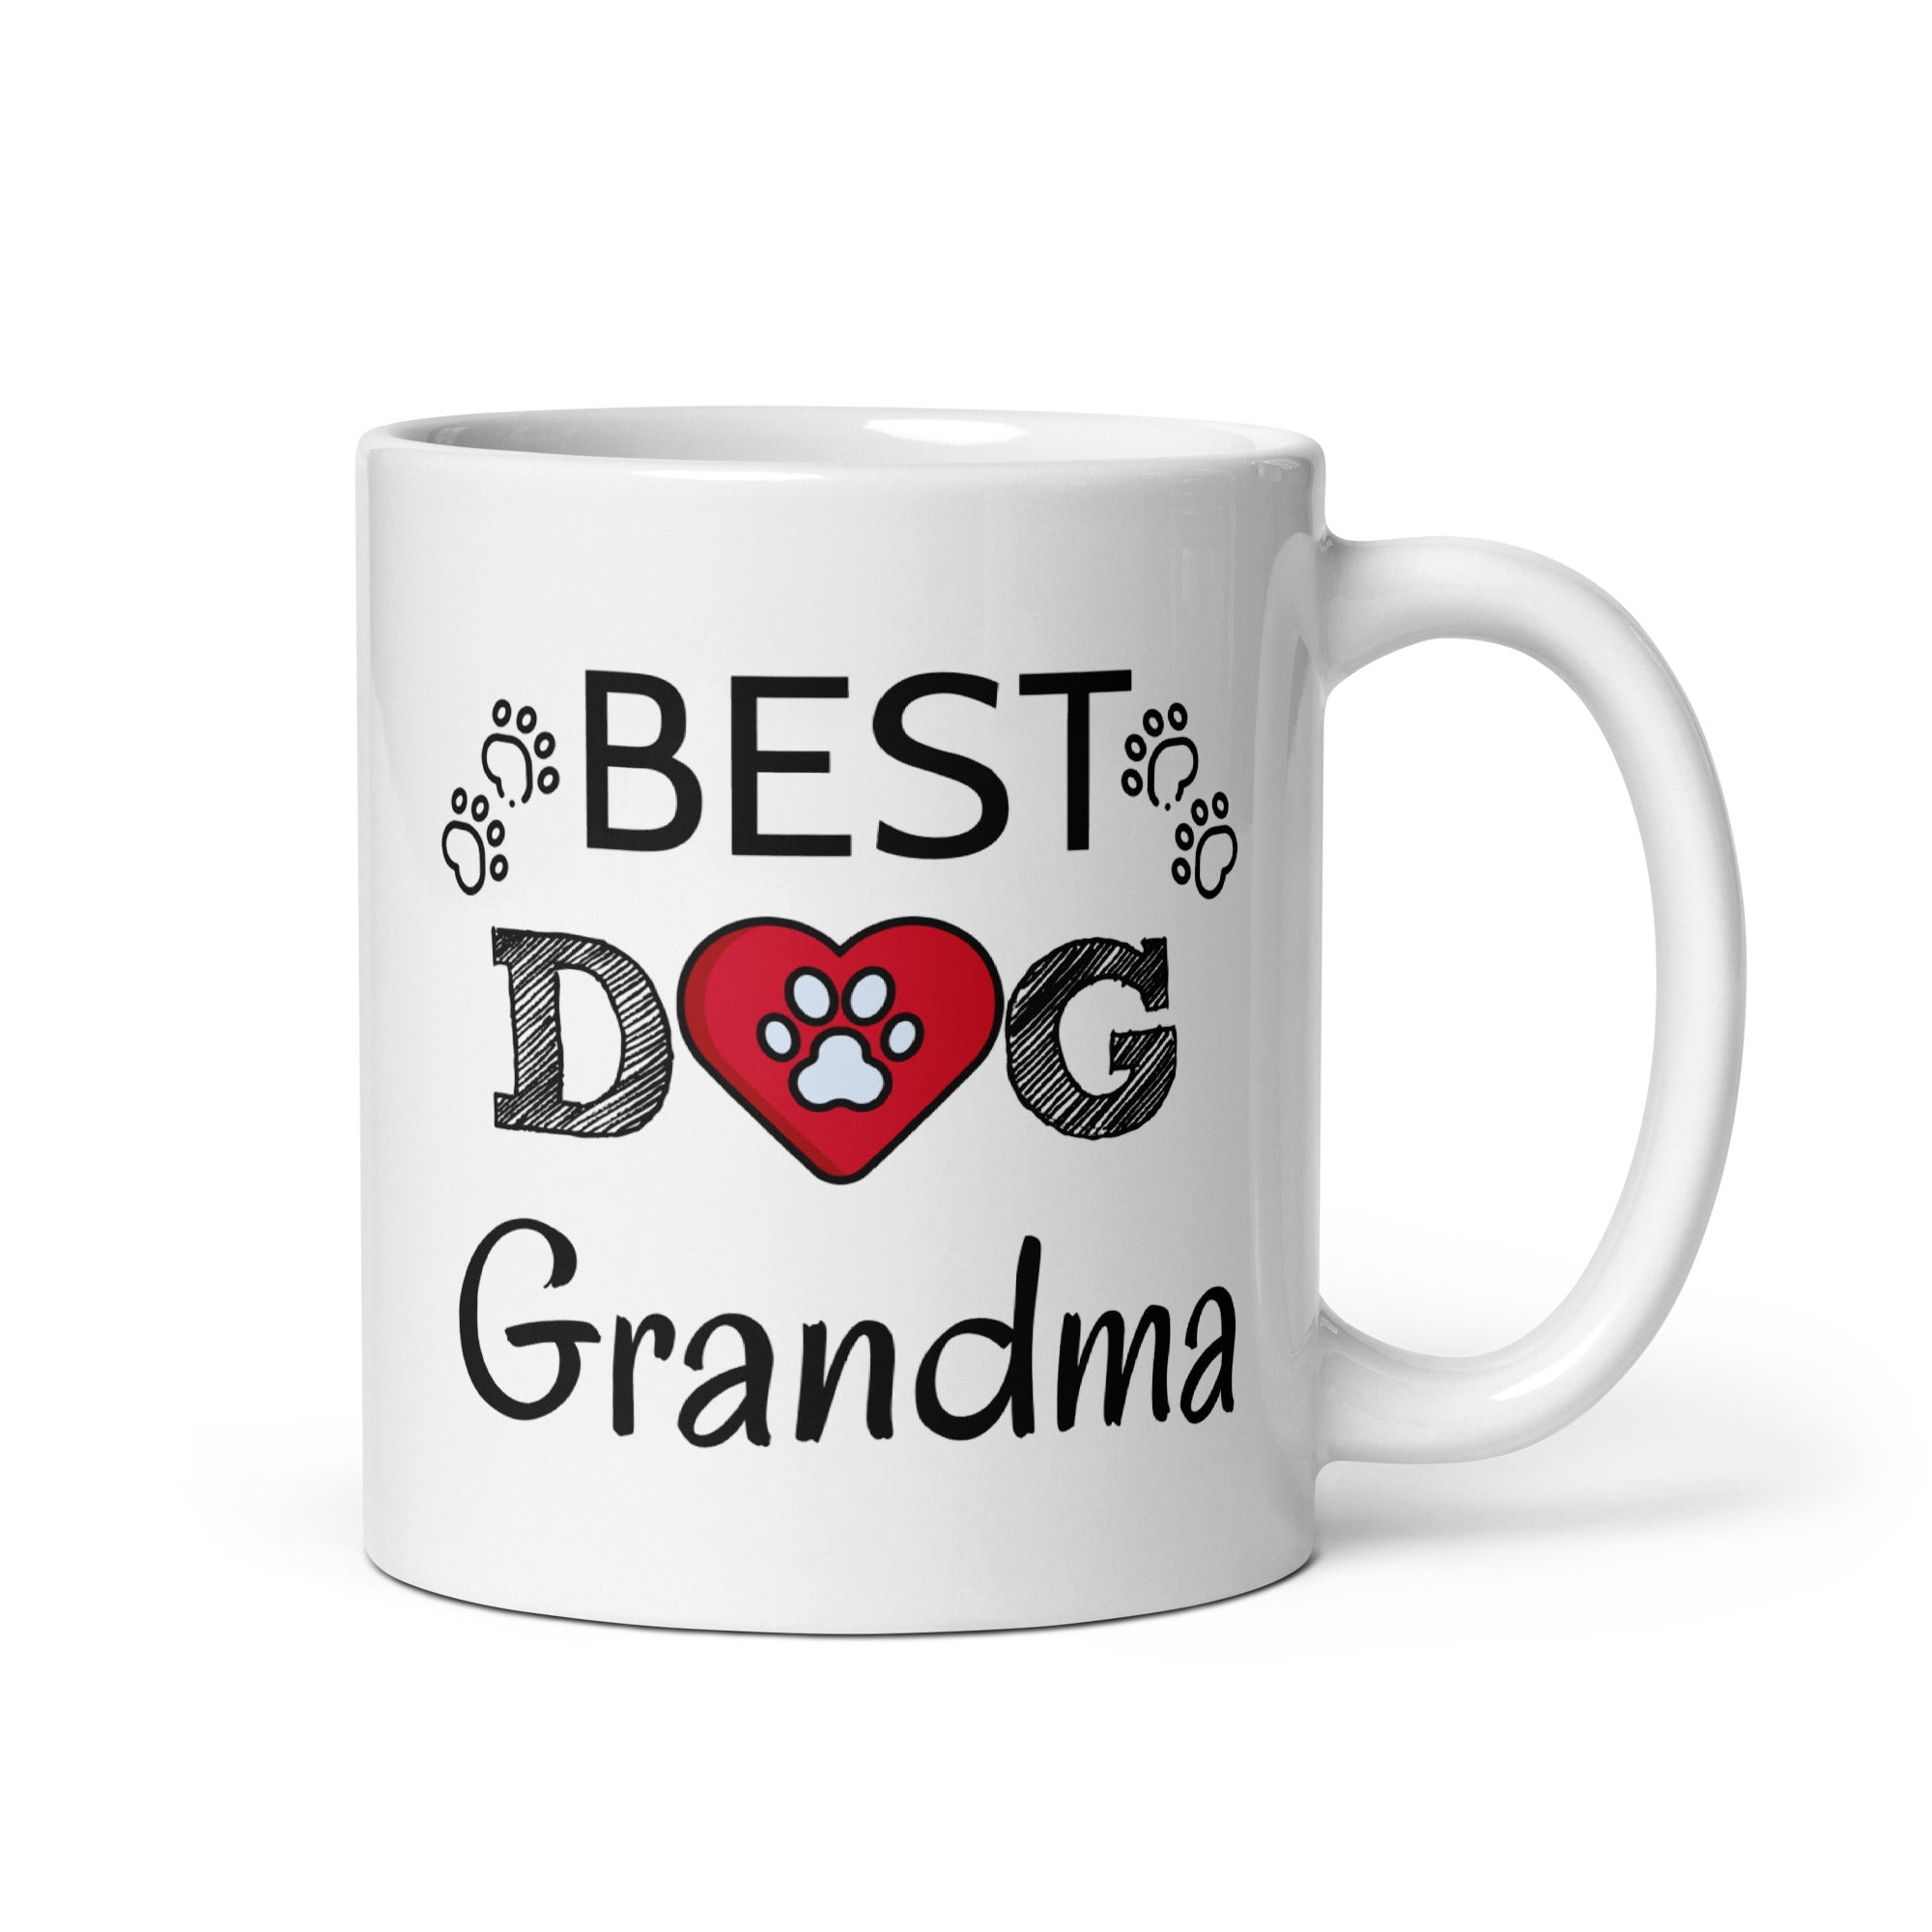 Best Dog Grandma Mug